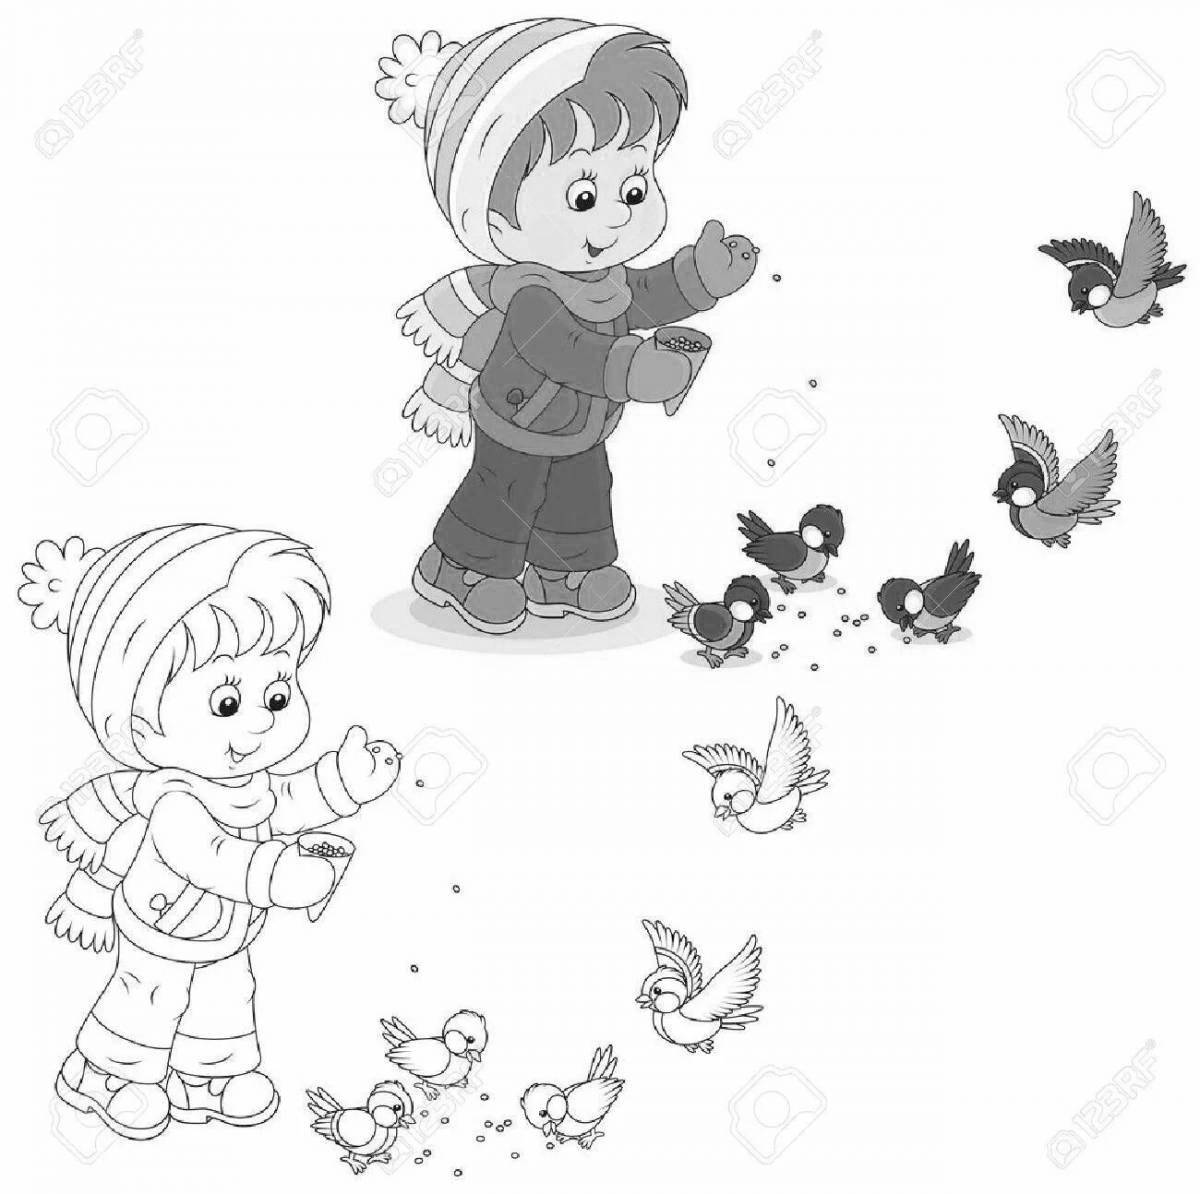 Увлекательная игра «покорми птиц зимой» для детей